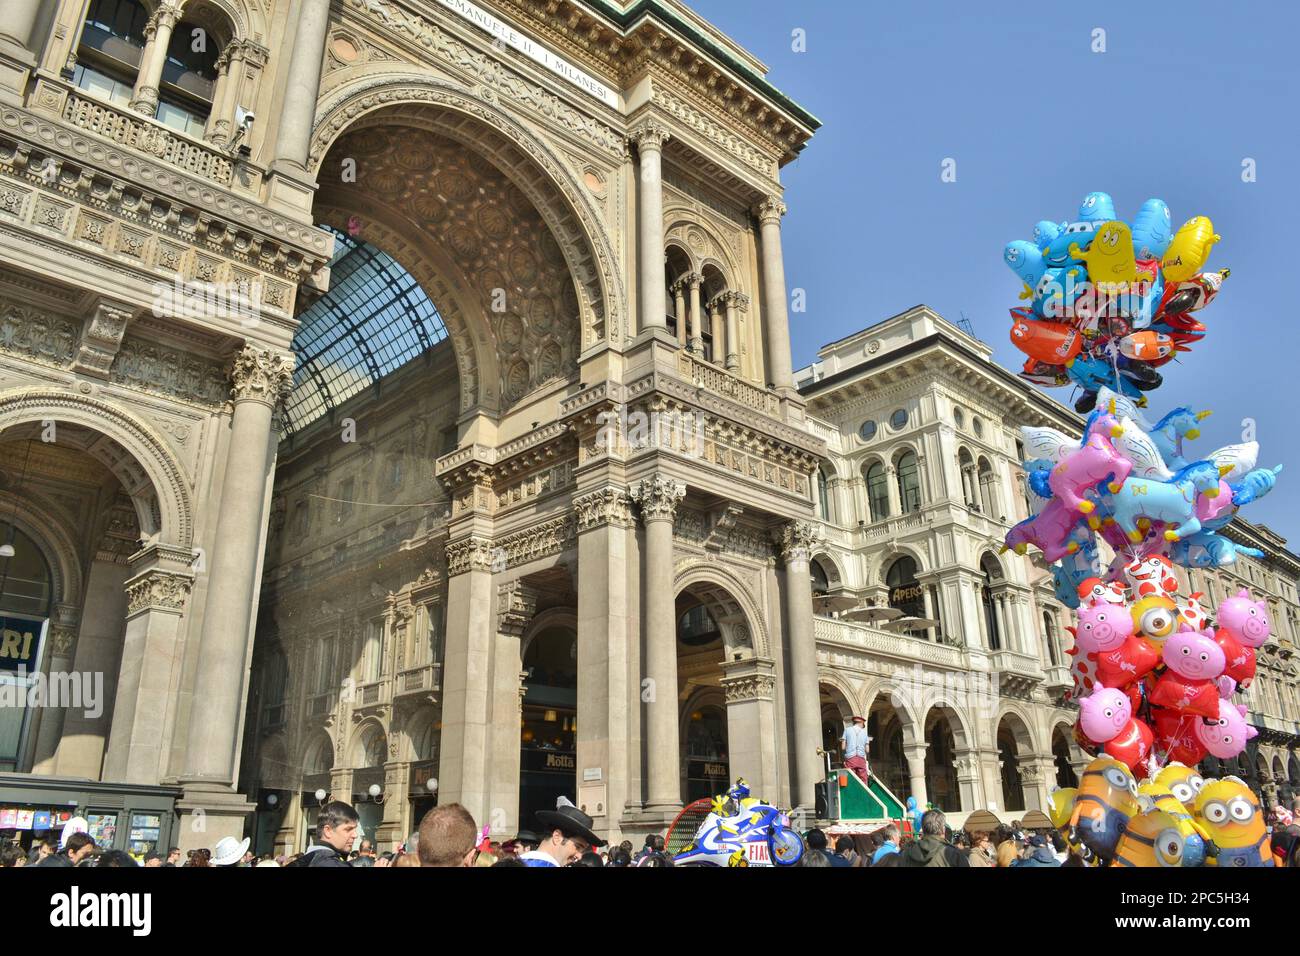 Personnes célébrant le Carnaval sur la place Duomo de Milan, devant le centre commercial Vittorio Emanuele II Gallery. Foule hapèpy et ballons colorés. Banque D'Images